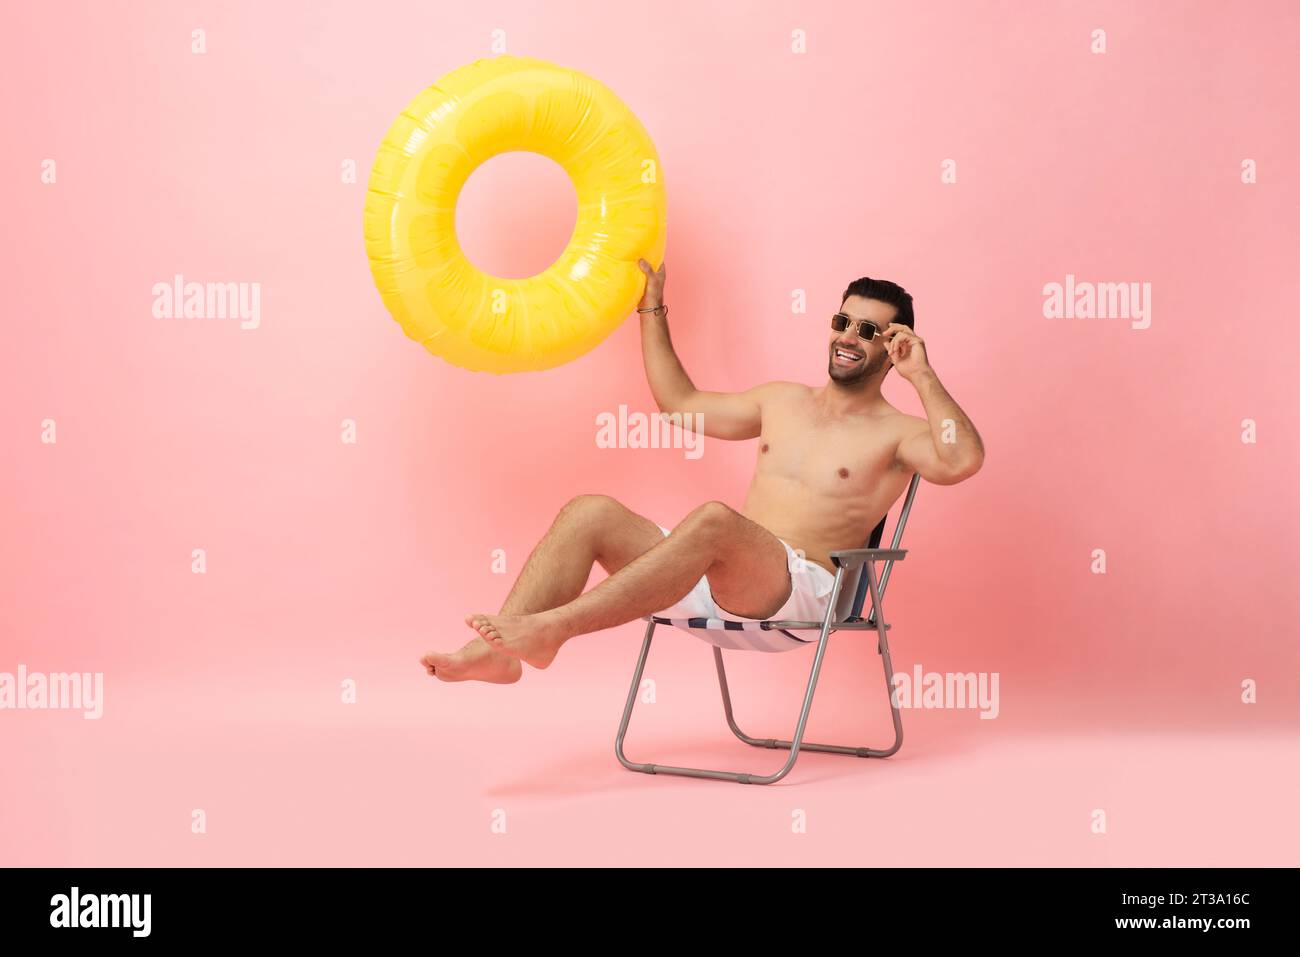 Hombre turístico caucásico sin camisa feliz que se sienta en la silla de la playa que sostiene el anillo de la natación en fondo aislado del tiro del estudio del color rosado, concepto de la vocación del verano Foto de stock